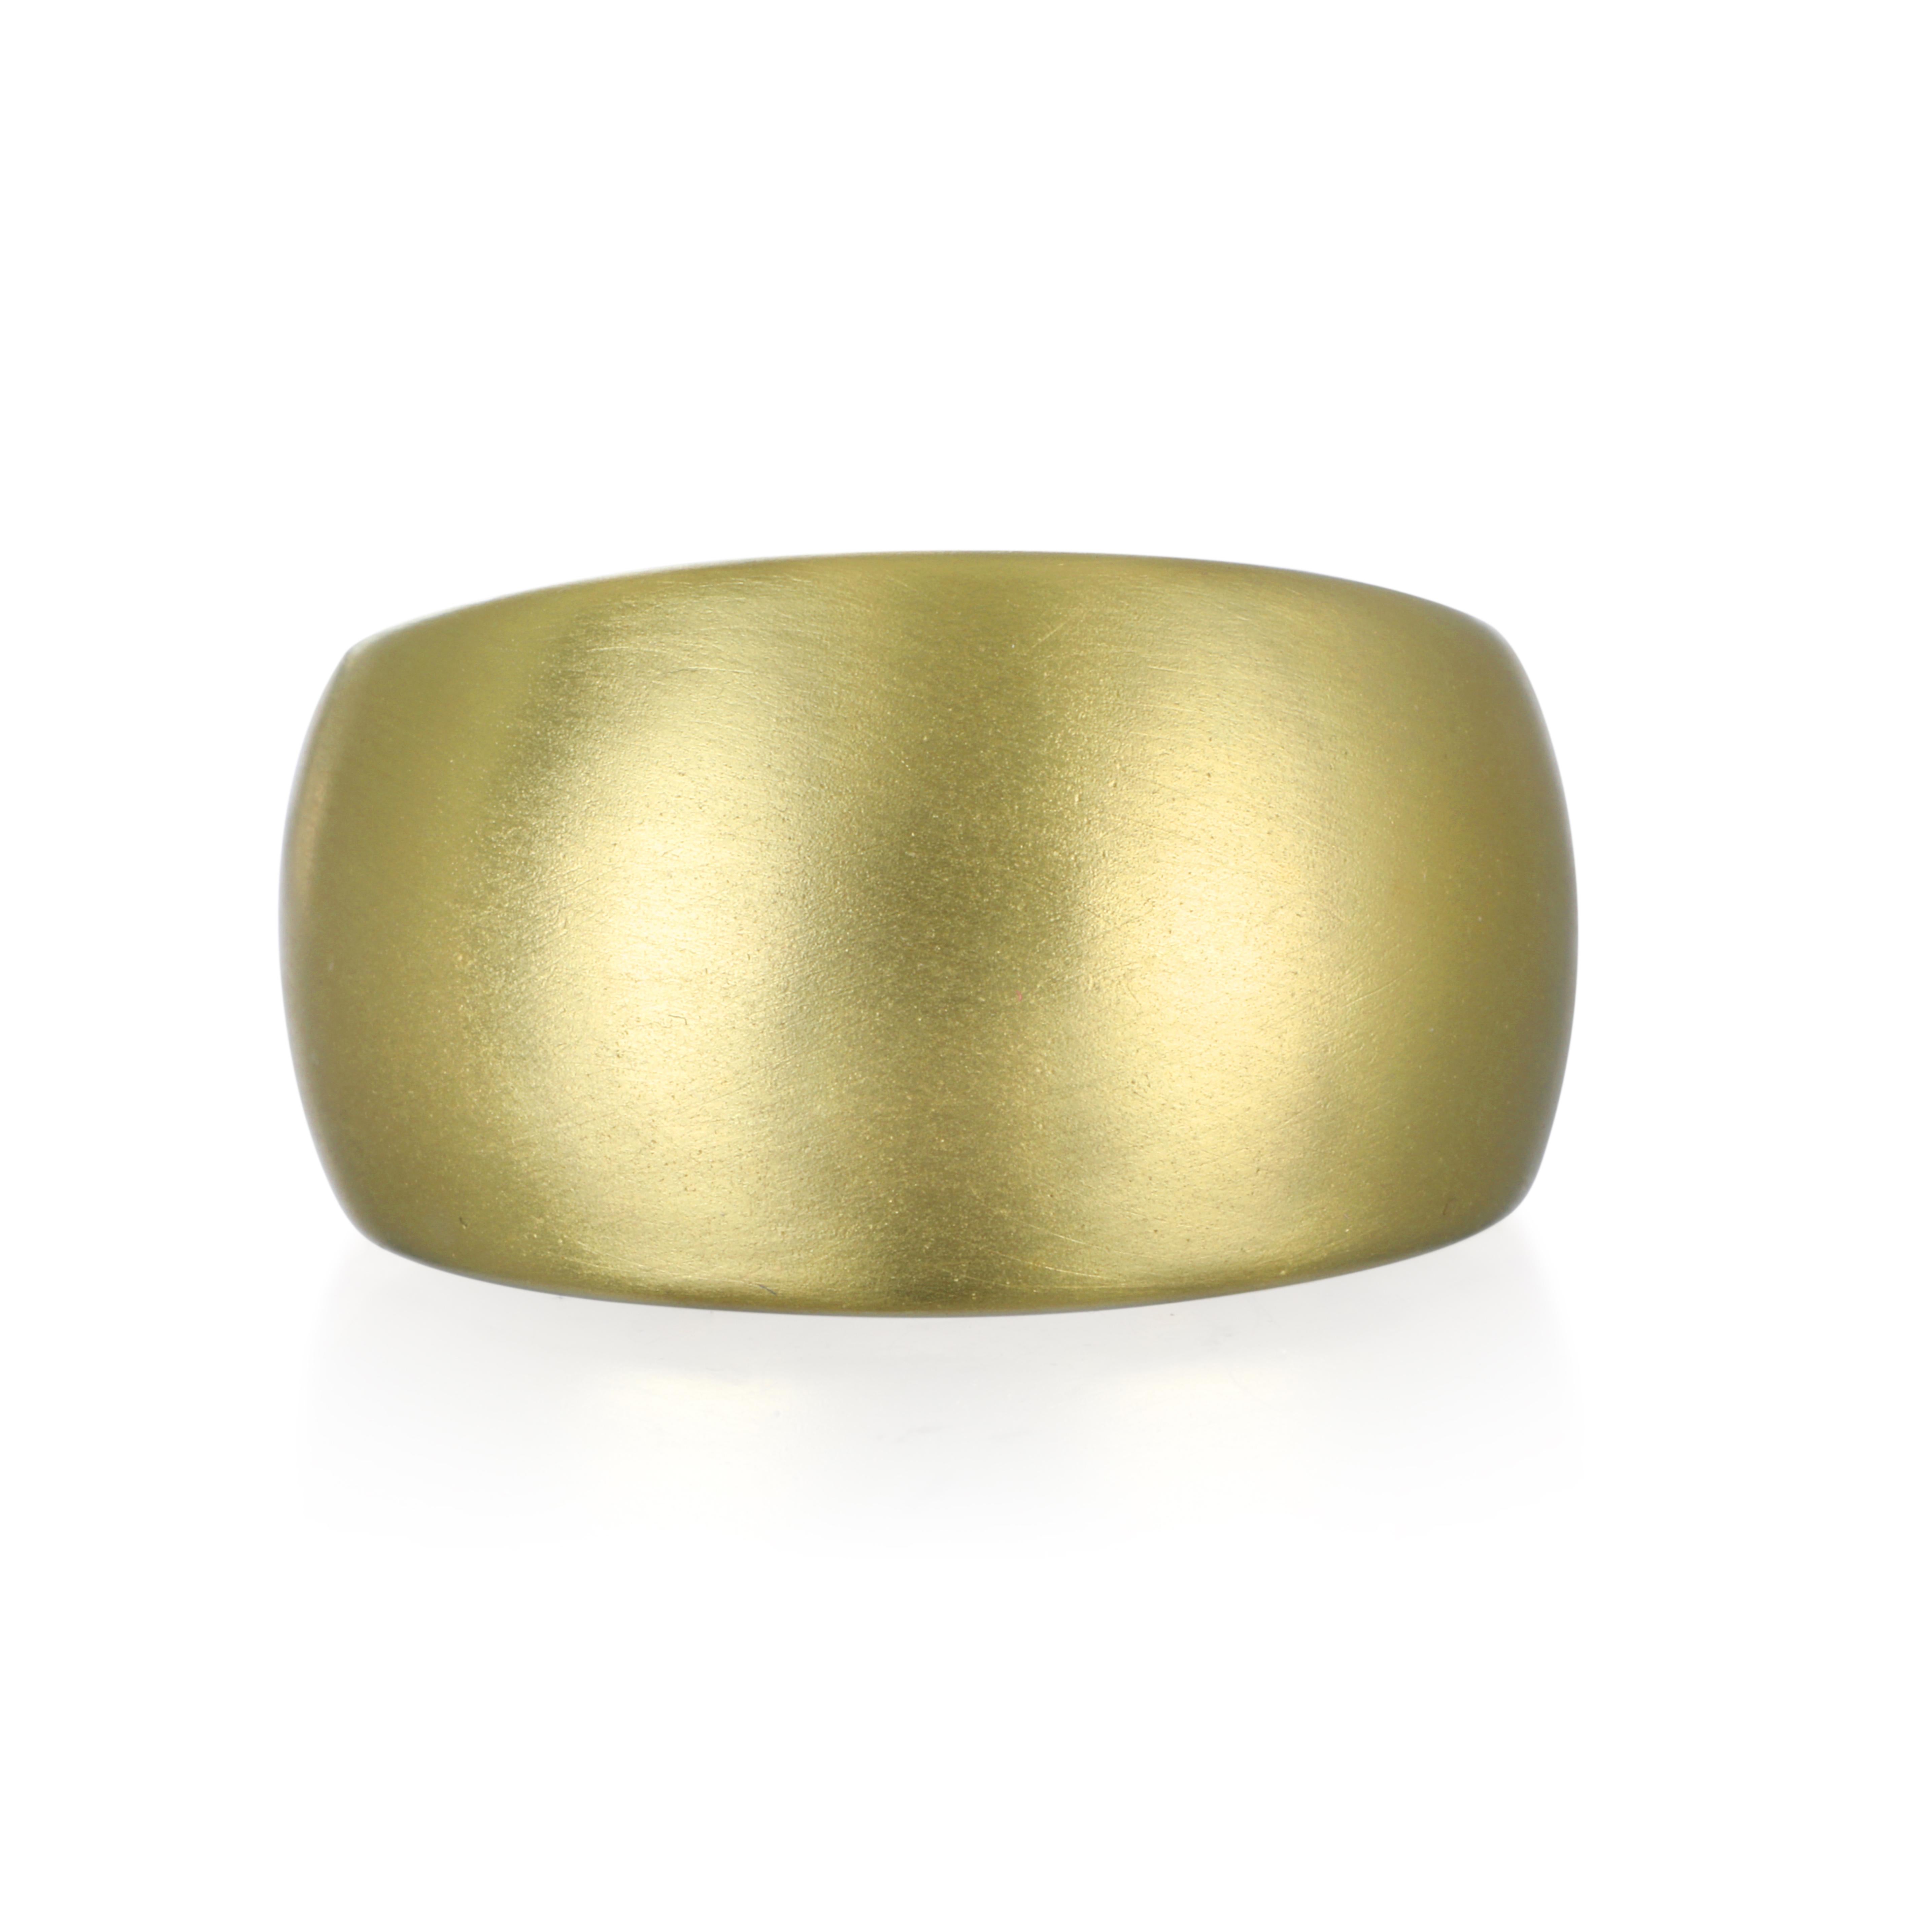 La version actualisée de Faye Kim du classique bracelet large en or mat 18 carats est moderne et fraîche.  Adoptez un look audacieux avec confort, style et élégance !

Taille 6.5
Conique : 14 x 7 MM